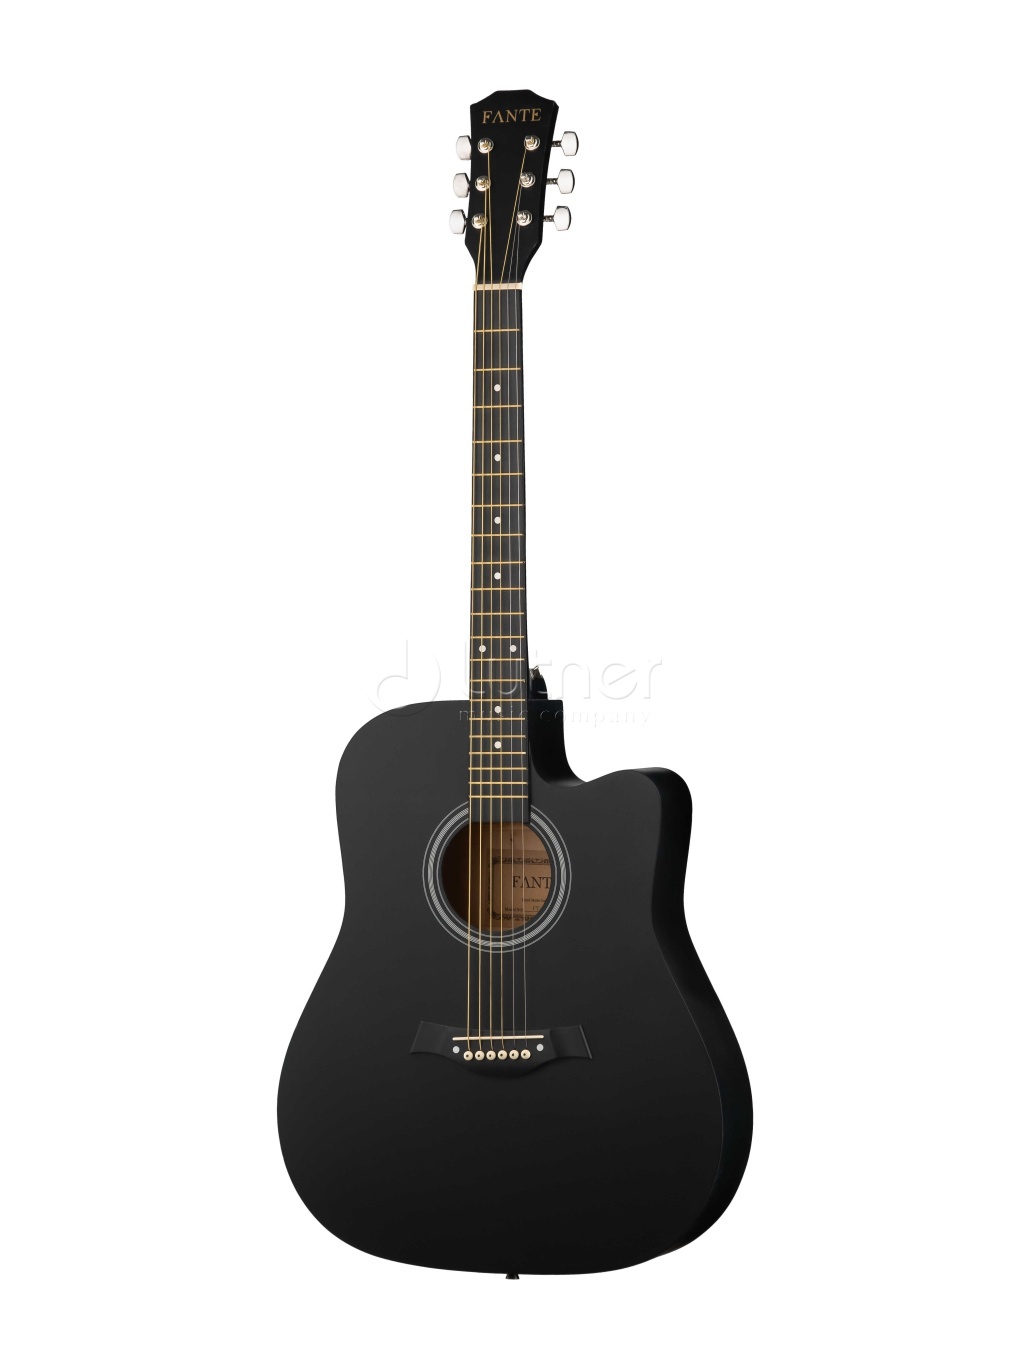 акустические гитары flight d 200 3ts Акустические гитары Fante FT-221-BK 41